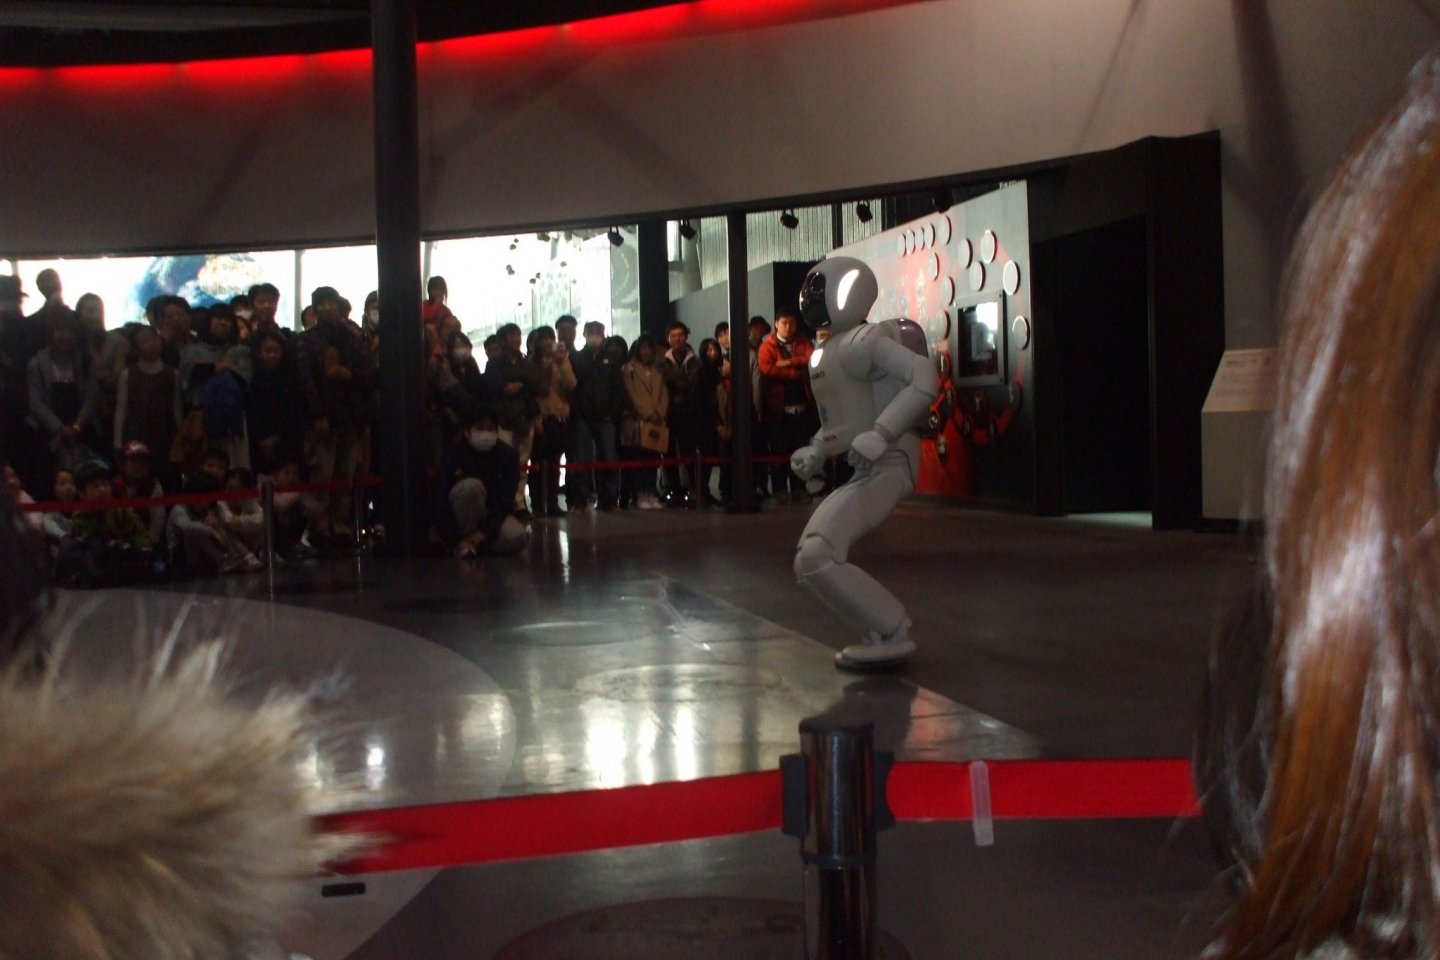 二足歩行ロボット「ASIMO」。身長130ｃｍで、大人が座ったときの目線の高さに合わせて作られており、近未来共に生活することを想定しています